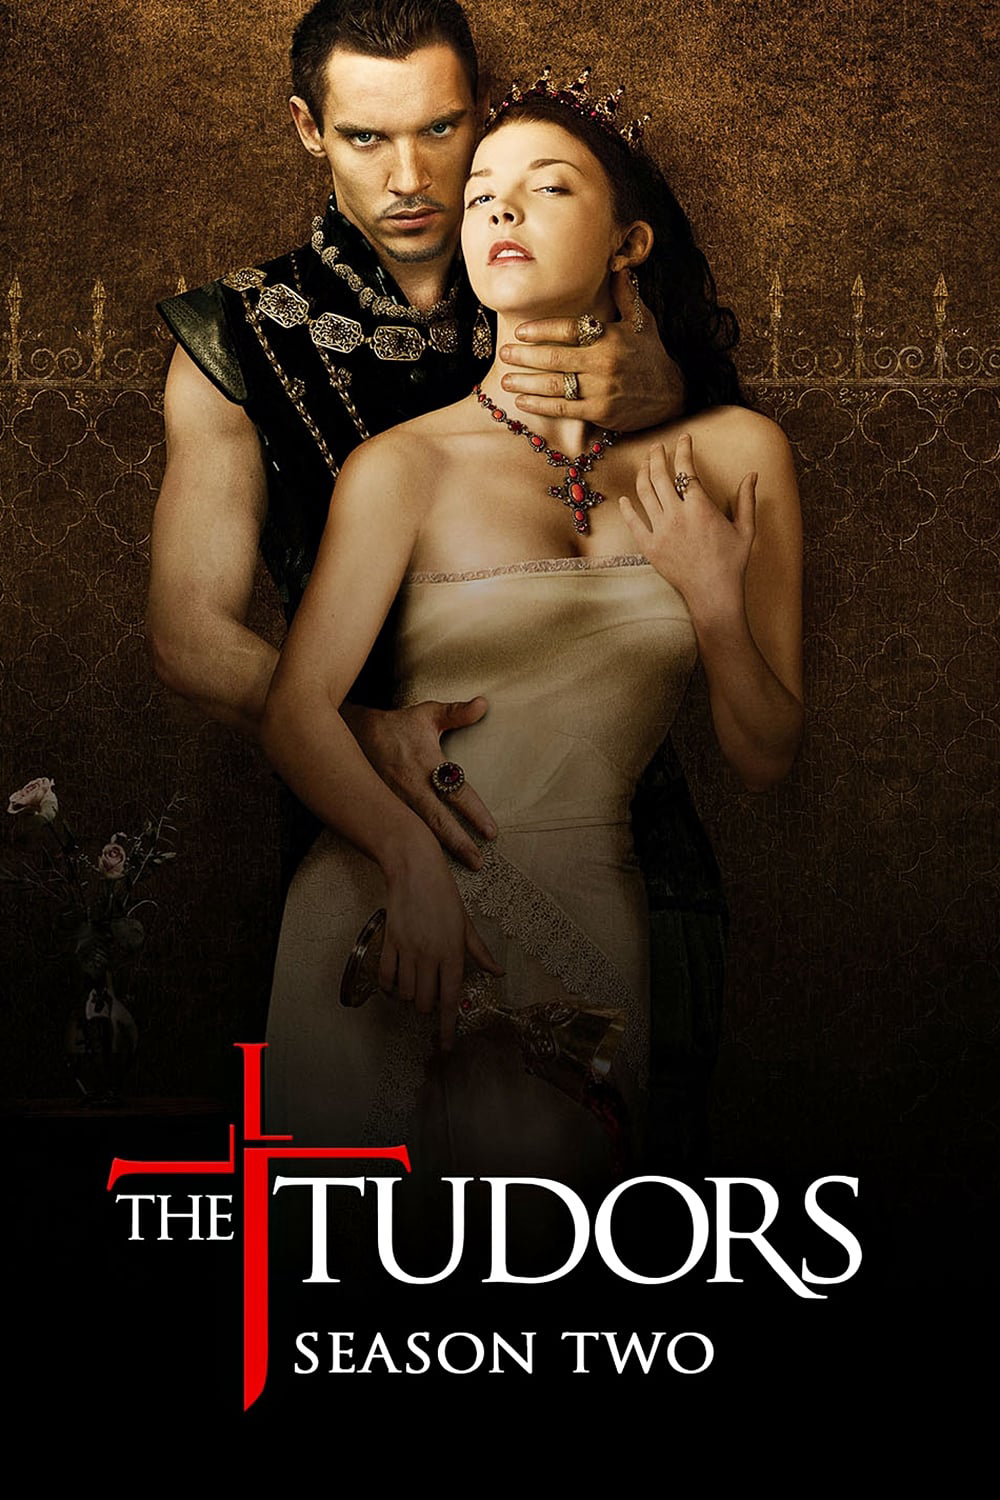 Vương Triều Tudors (Phần 2)